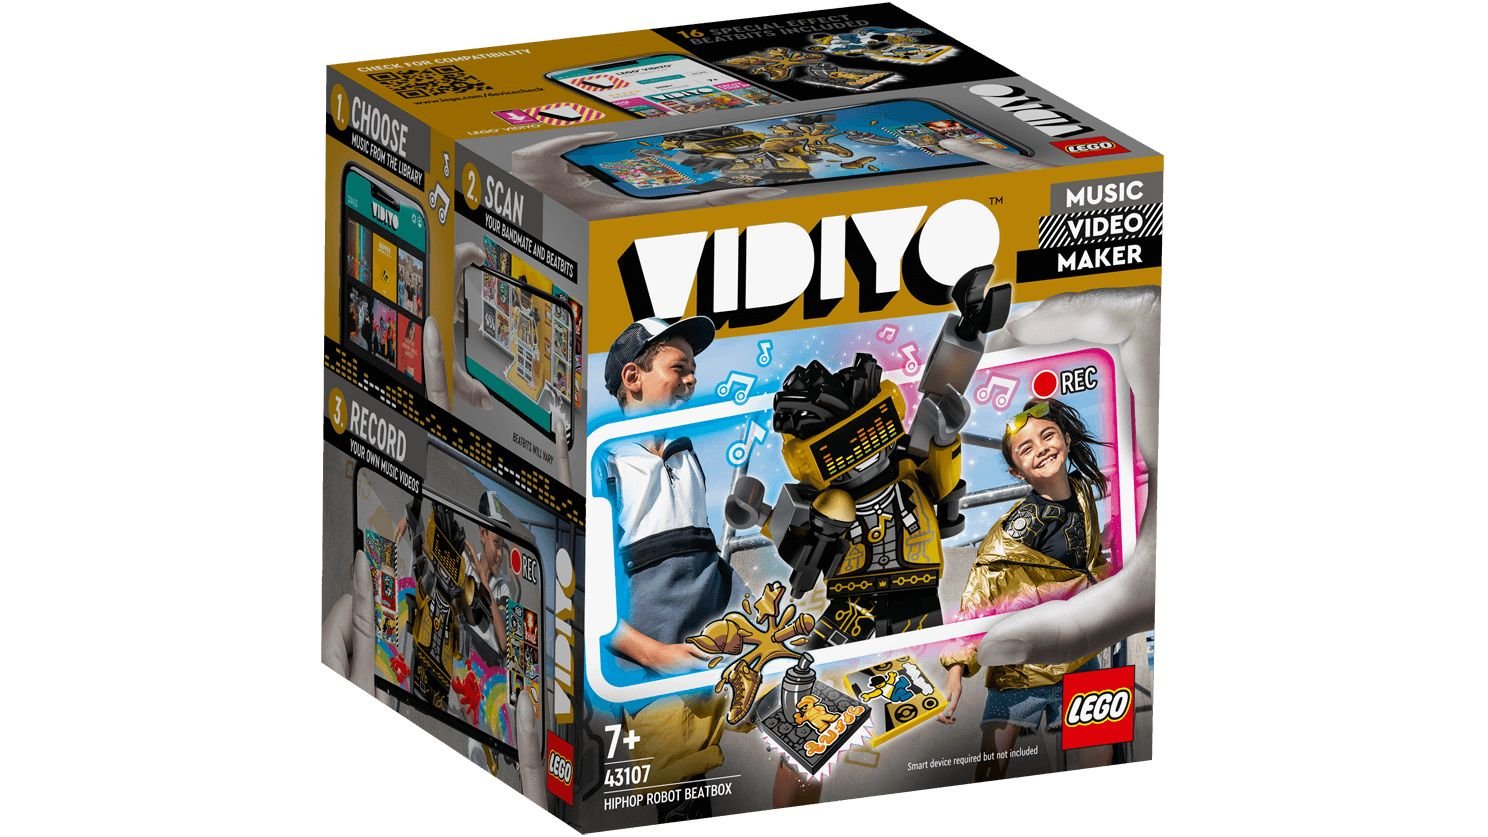 LEGO® Vidiyo HipHop Robot BeatBox 43107 (2021) ab 5,38